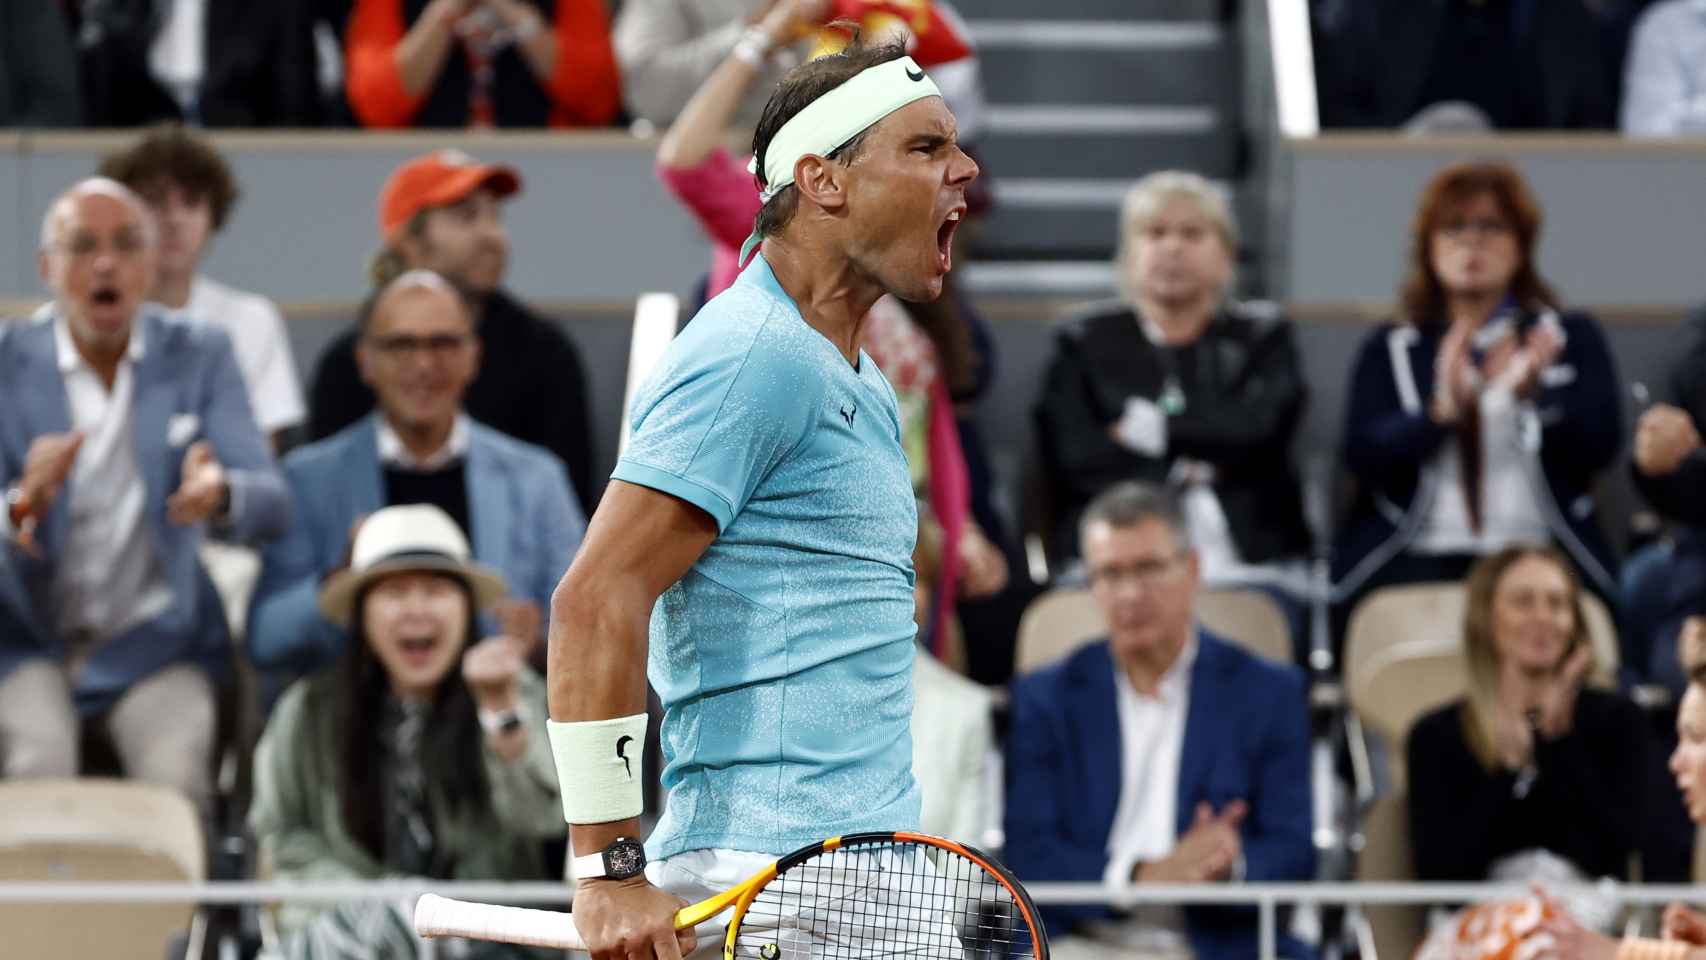 Rafael Nadal en acción durante su primera ronda de singles masculinos contra Alexander Zverev en el Grand Slam del Roland Garros en París EFE/MOHAMMED BADRA